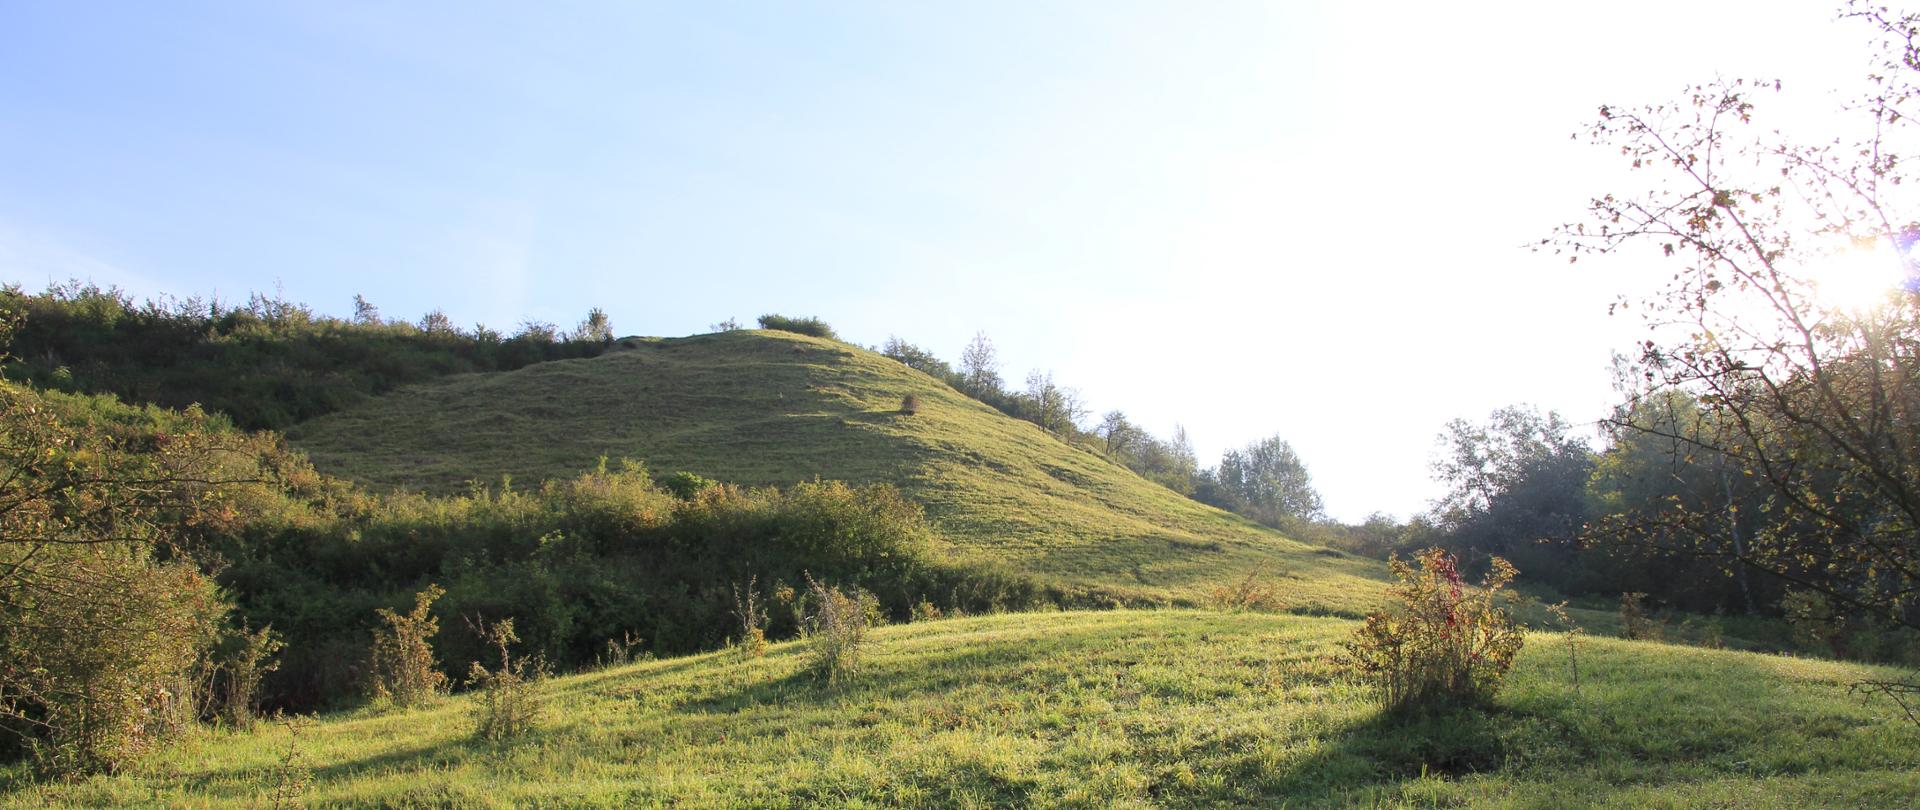 Fragment błękitnego nieba, wzgórze pokryte zieloną trawą.